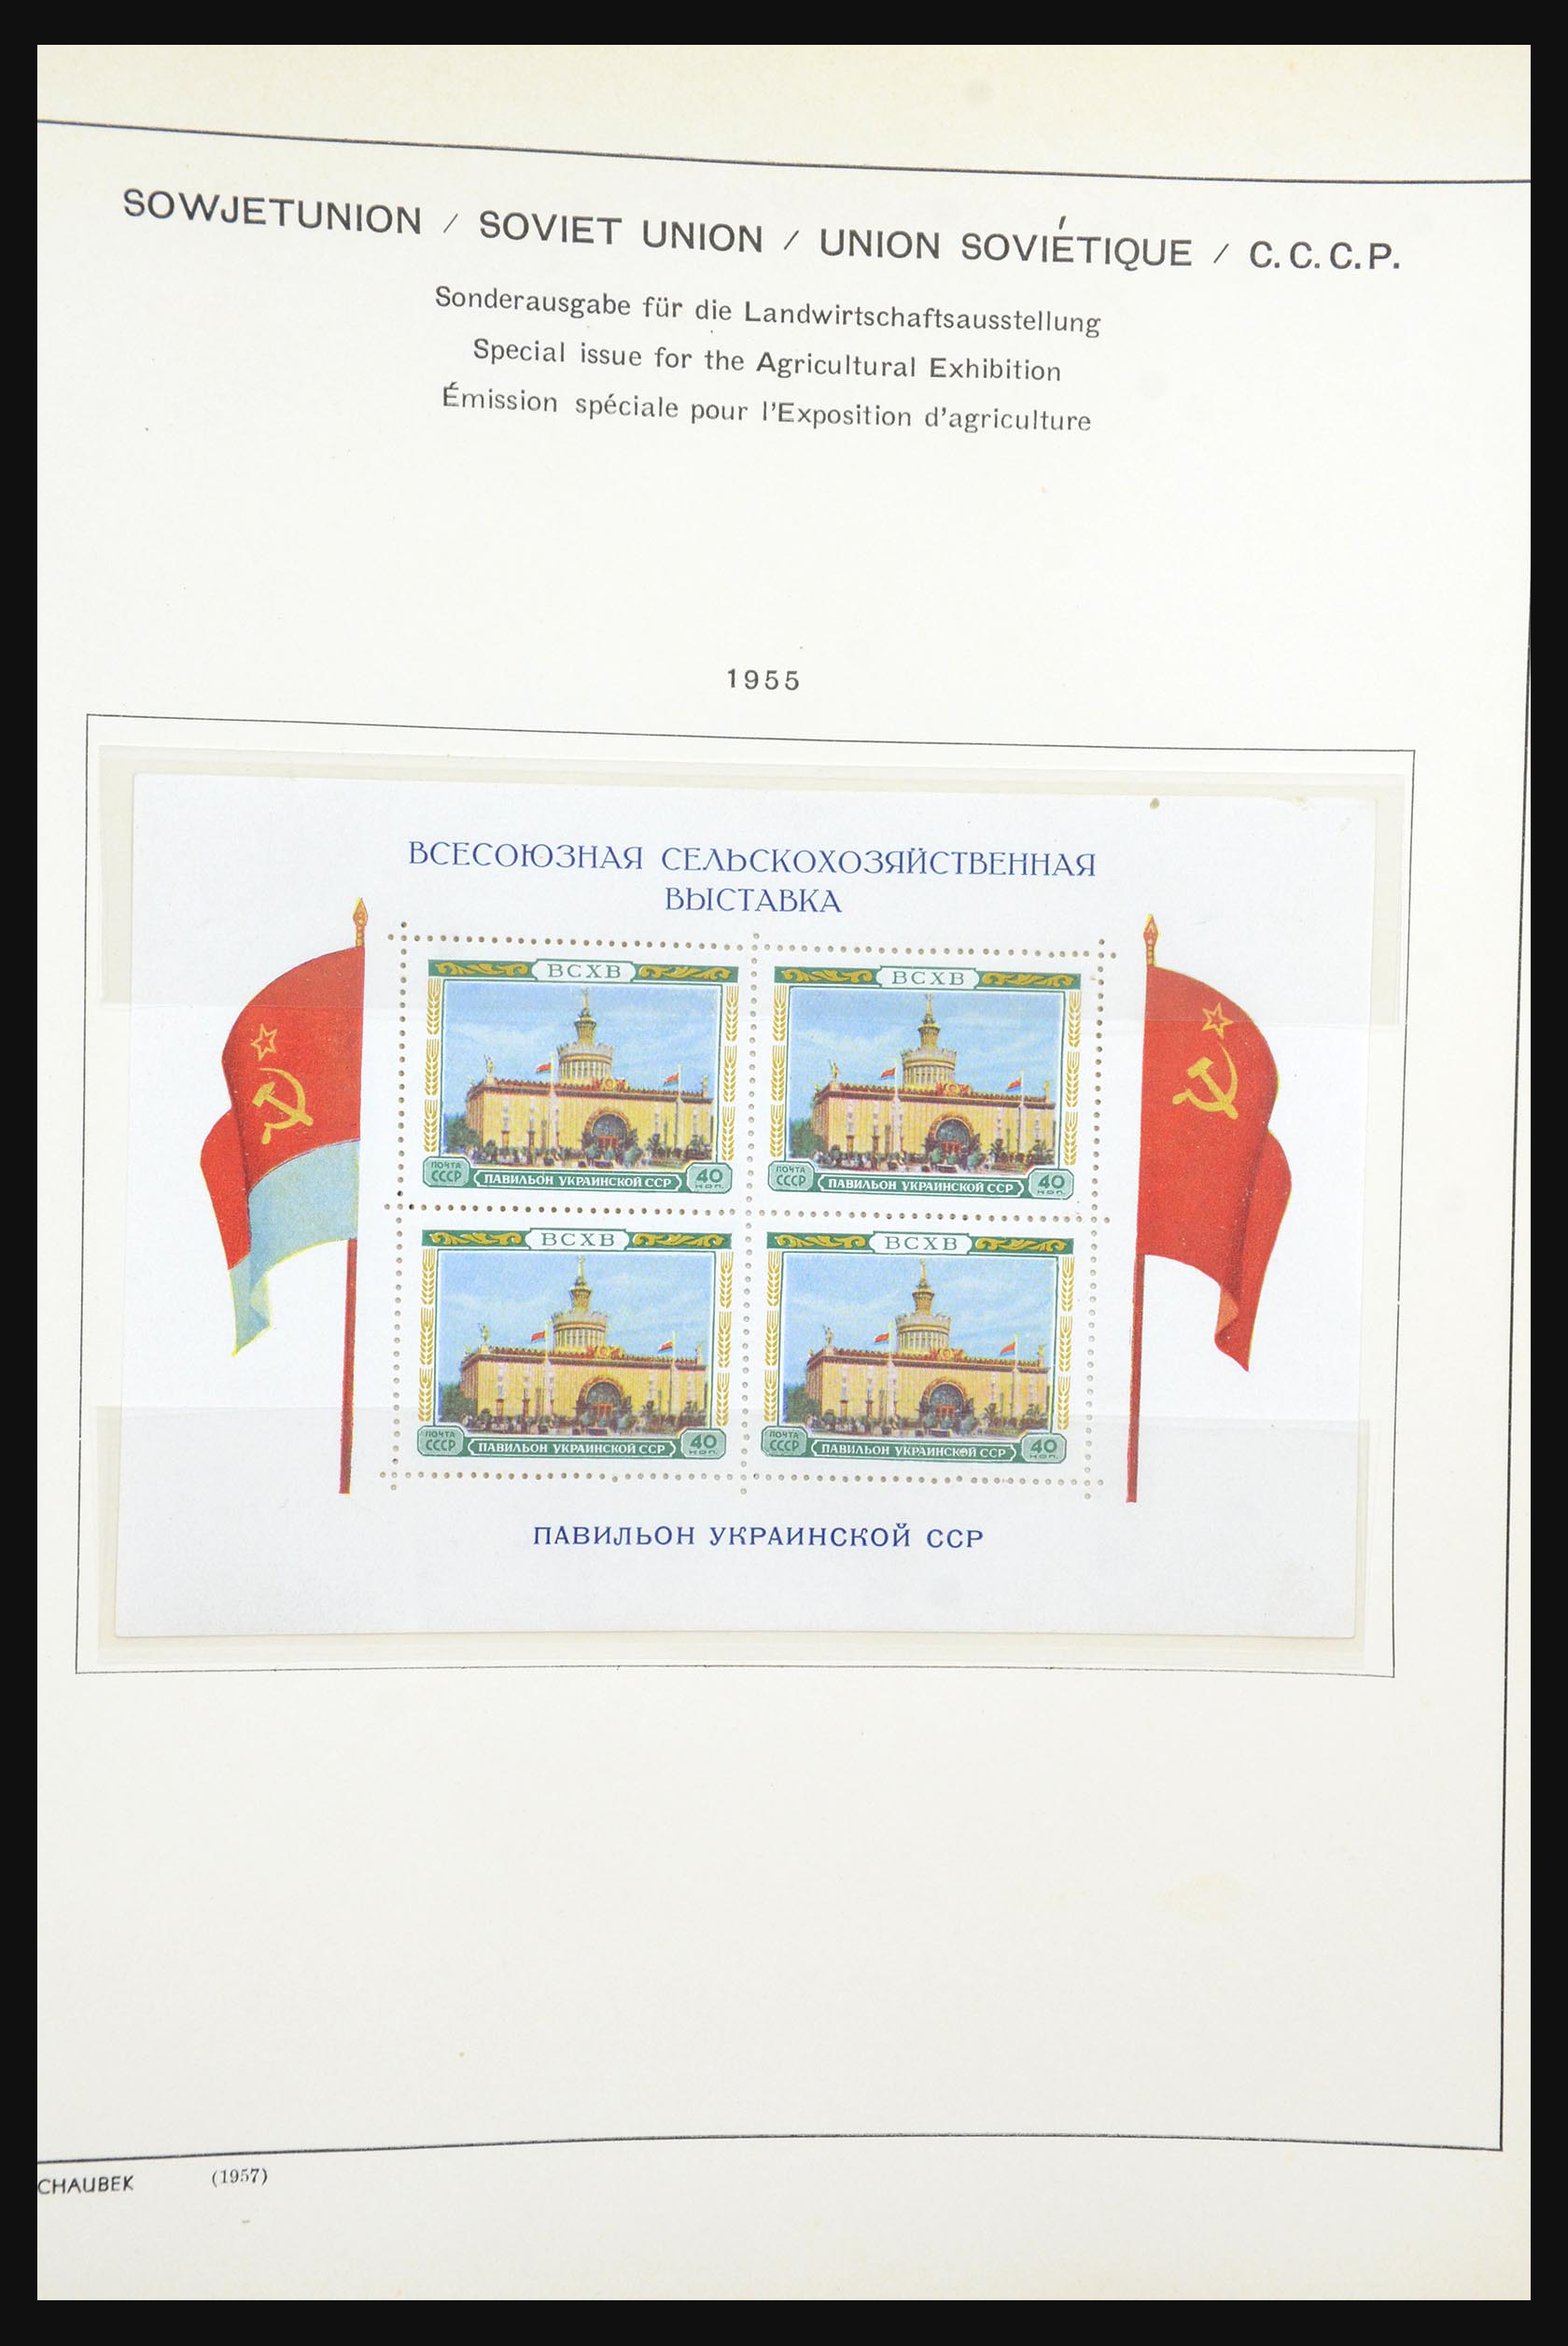 31651 215 - 31651 Russia 1858-1959.